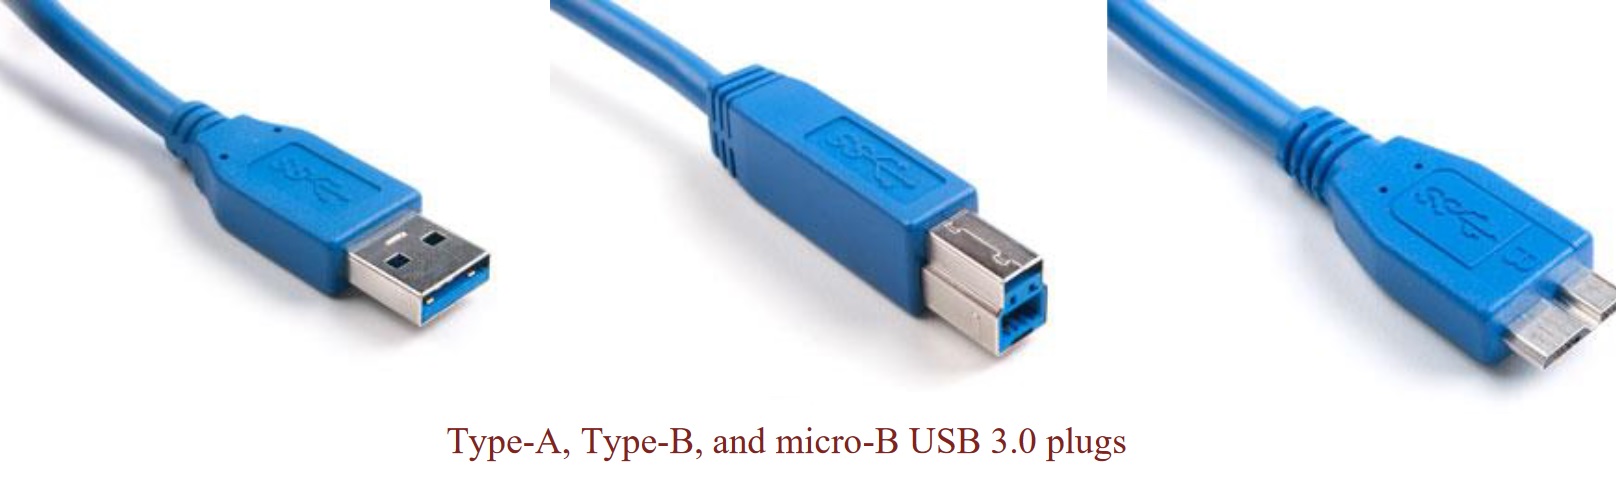 اشکال مختلف USB